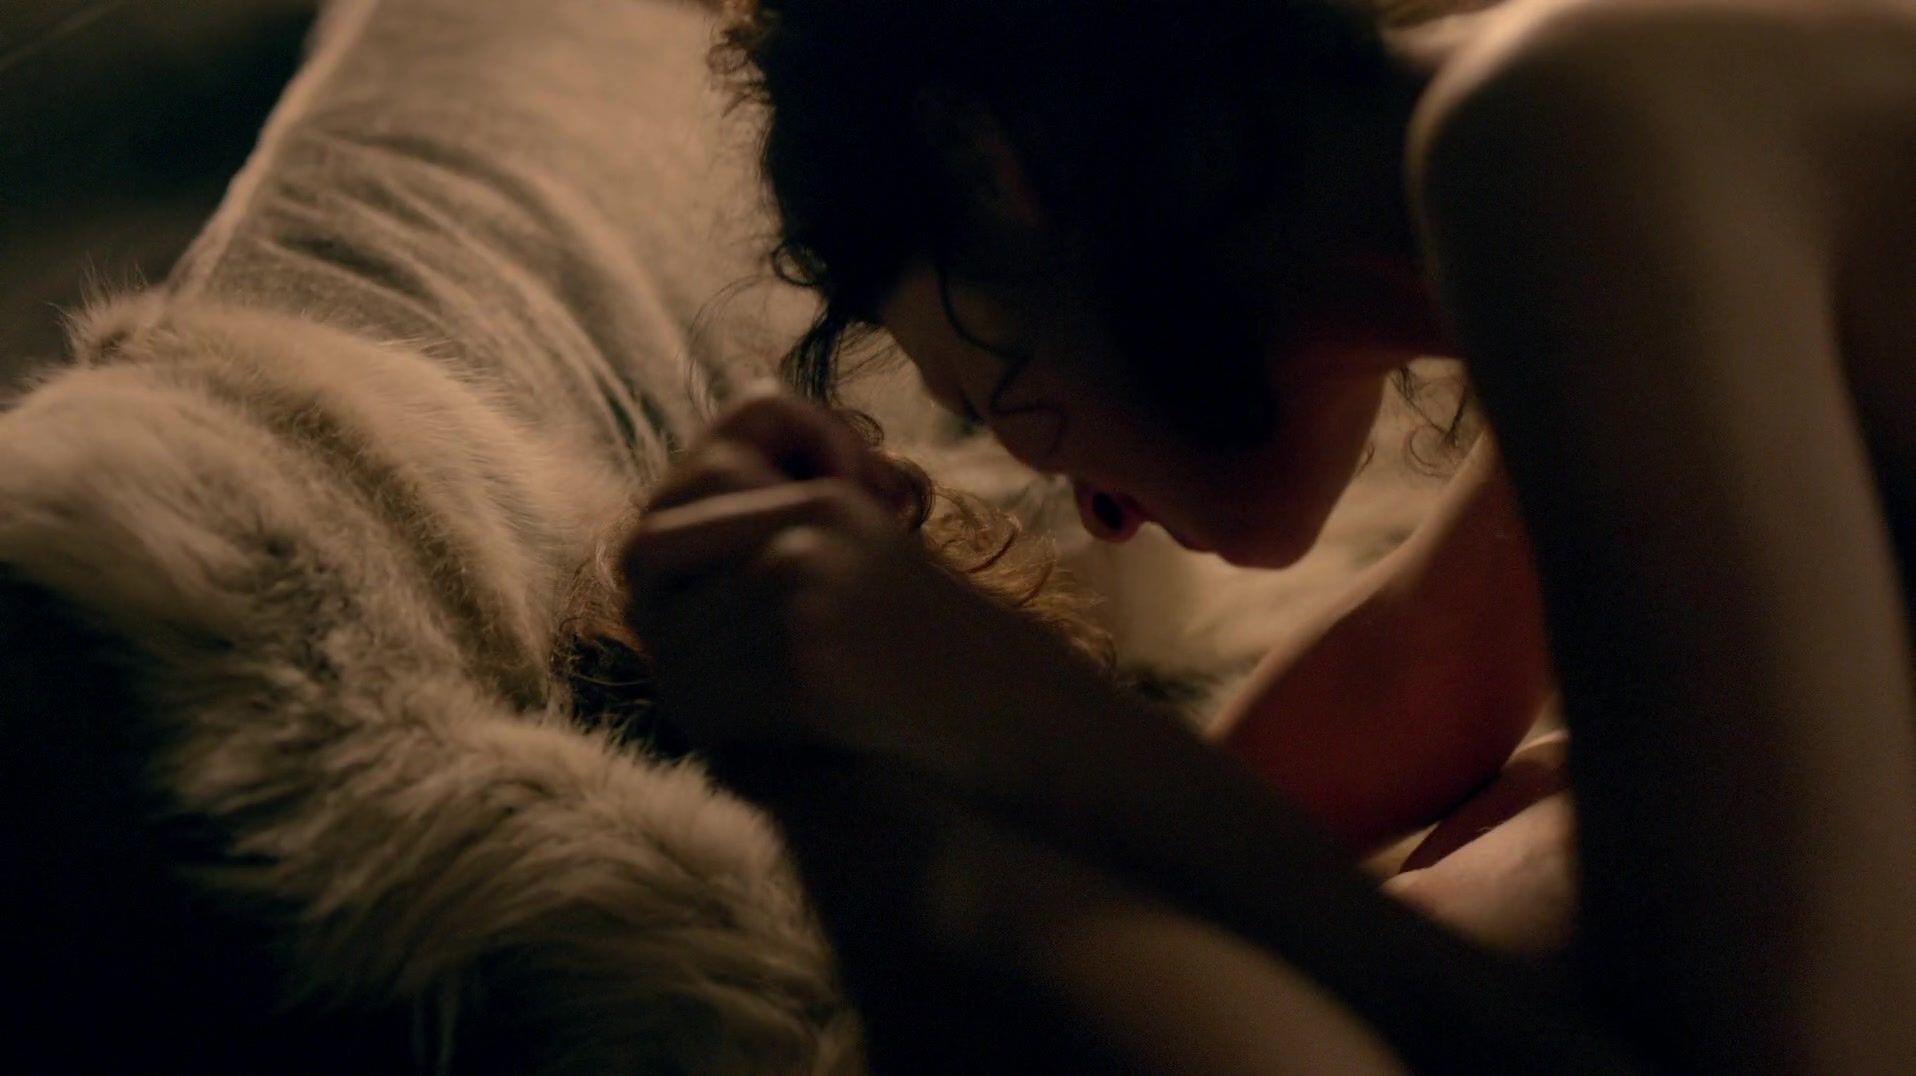 Big Booty Sex scene of naked Caitriona Balfe | TV show "Outlander" Voyeursex